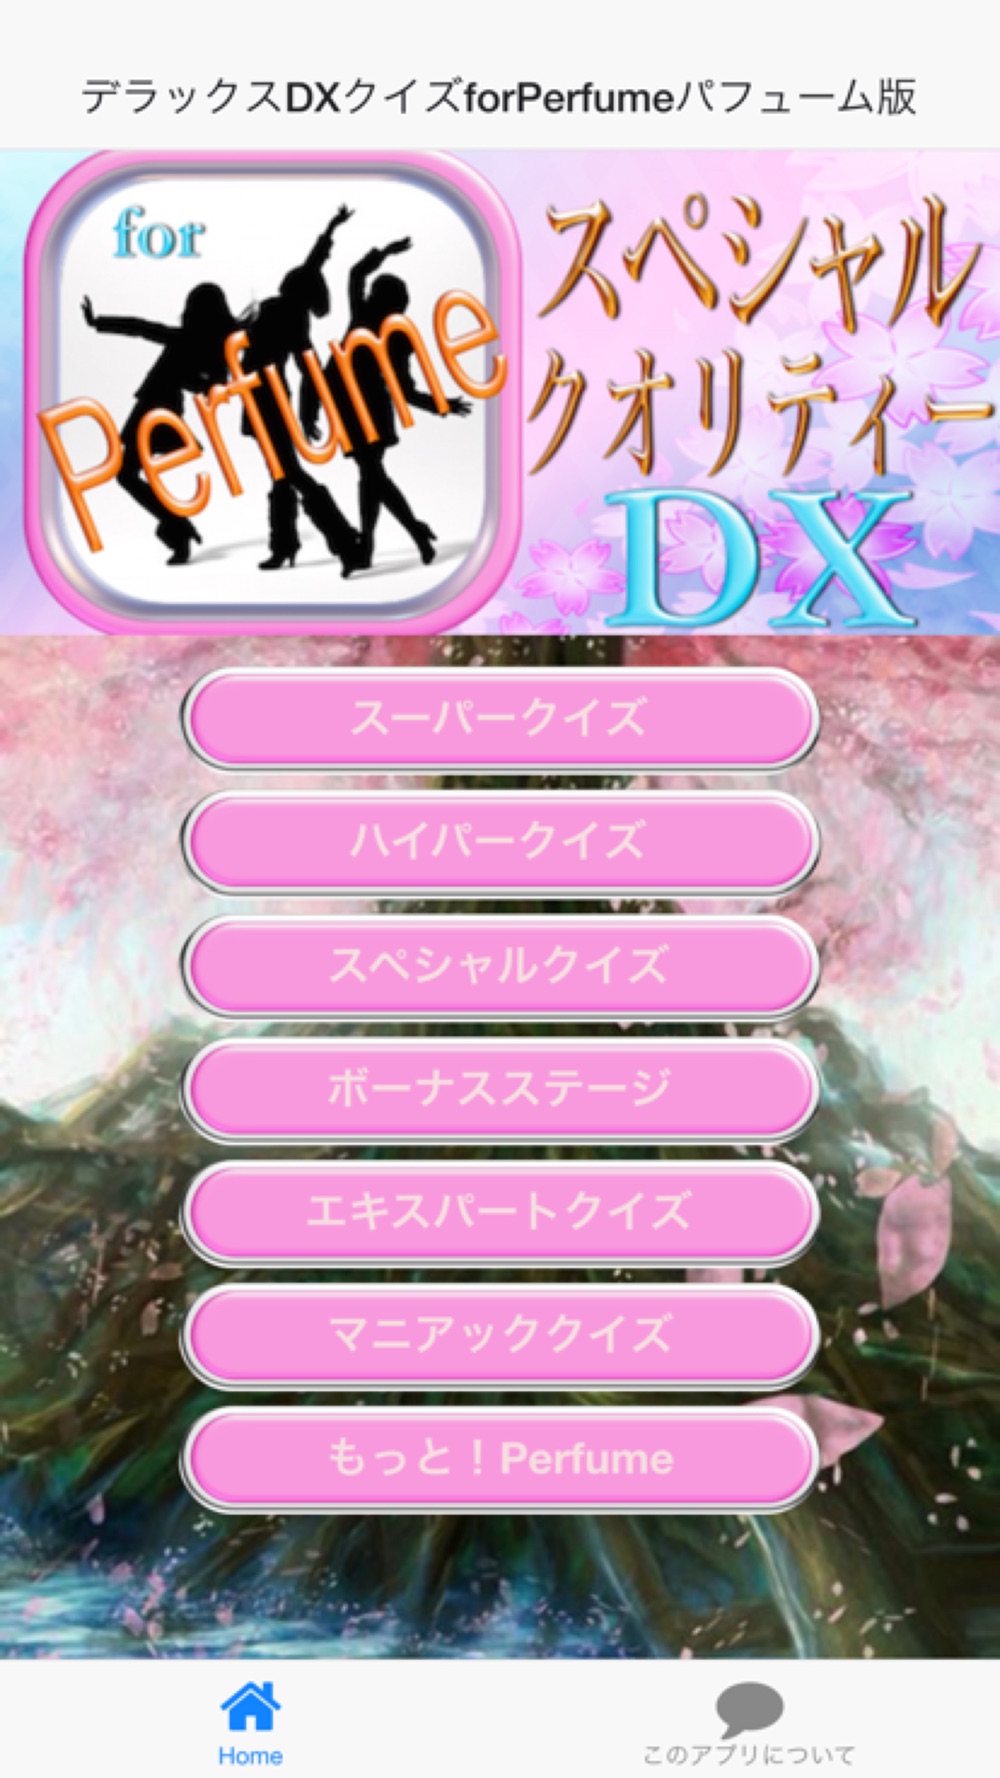 デラックスdxクイズforperfumeパフューム版 Free Download App For Iphone Steprimo Com